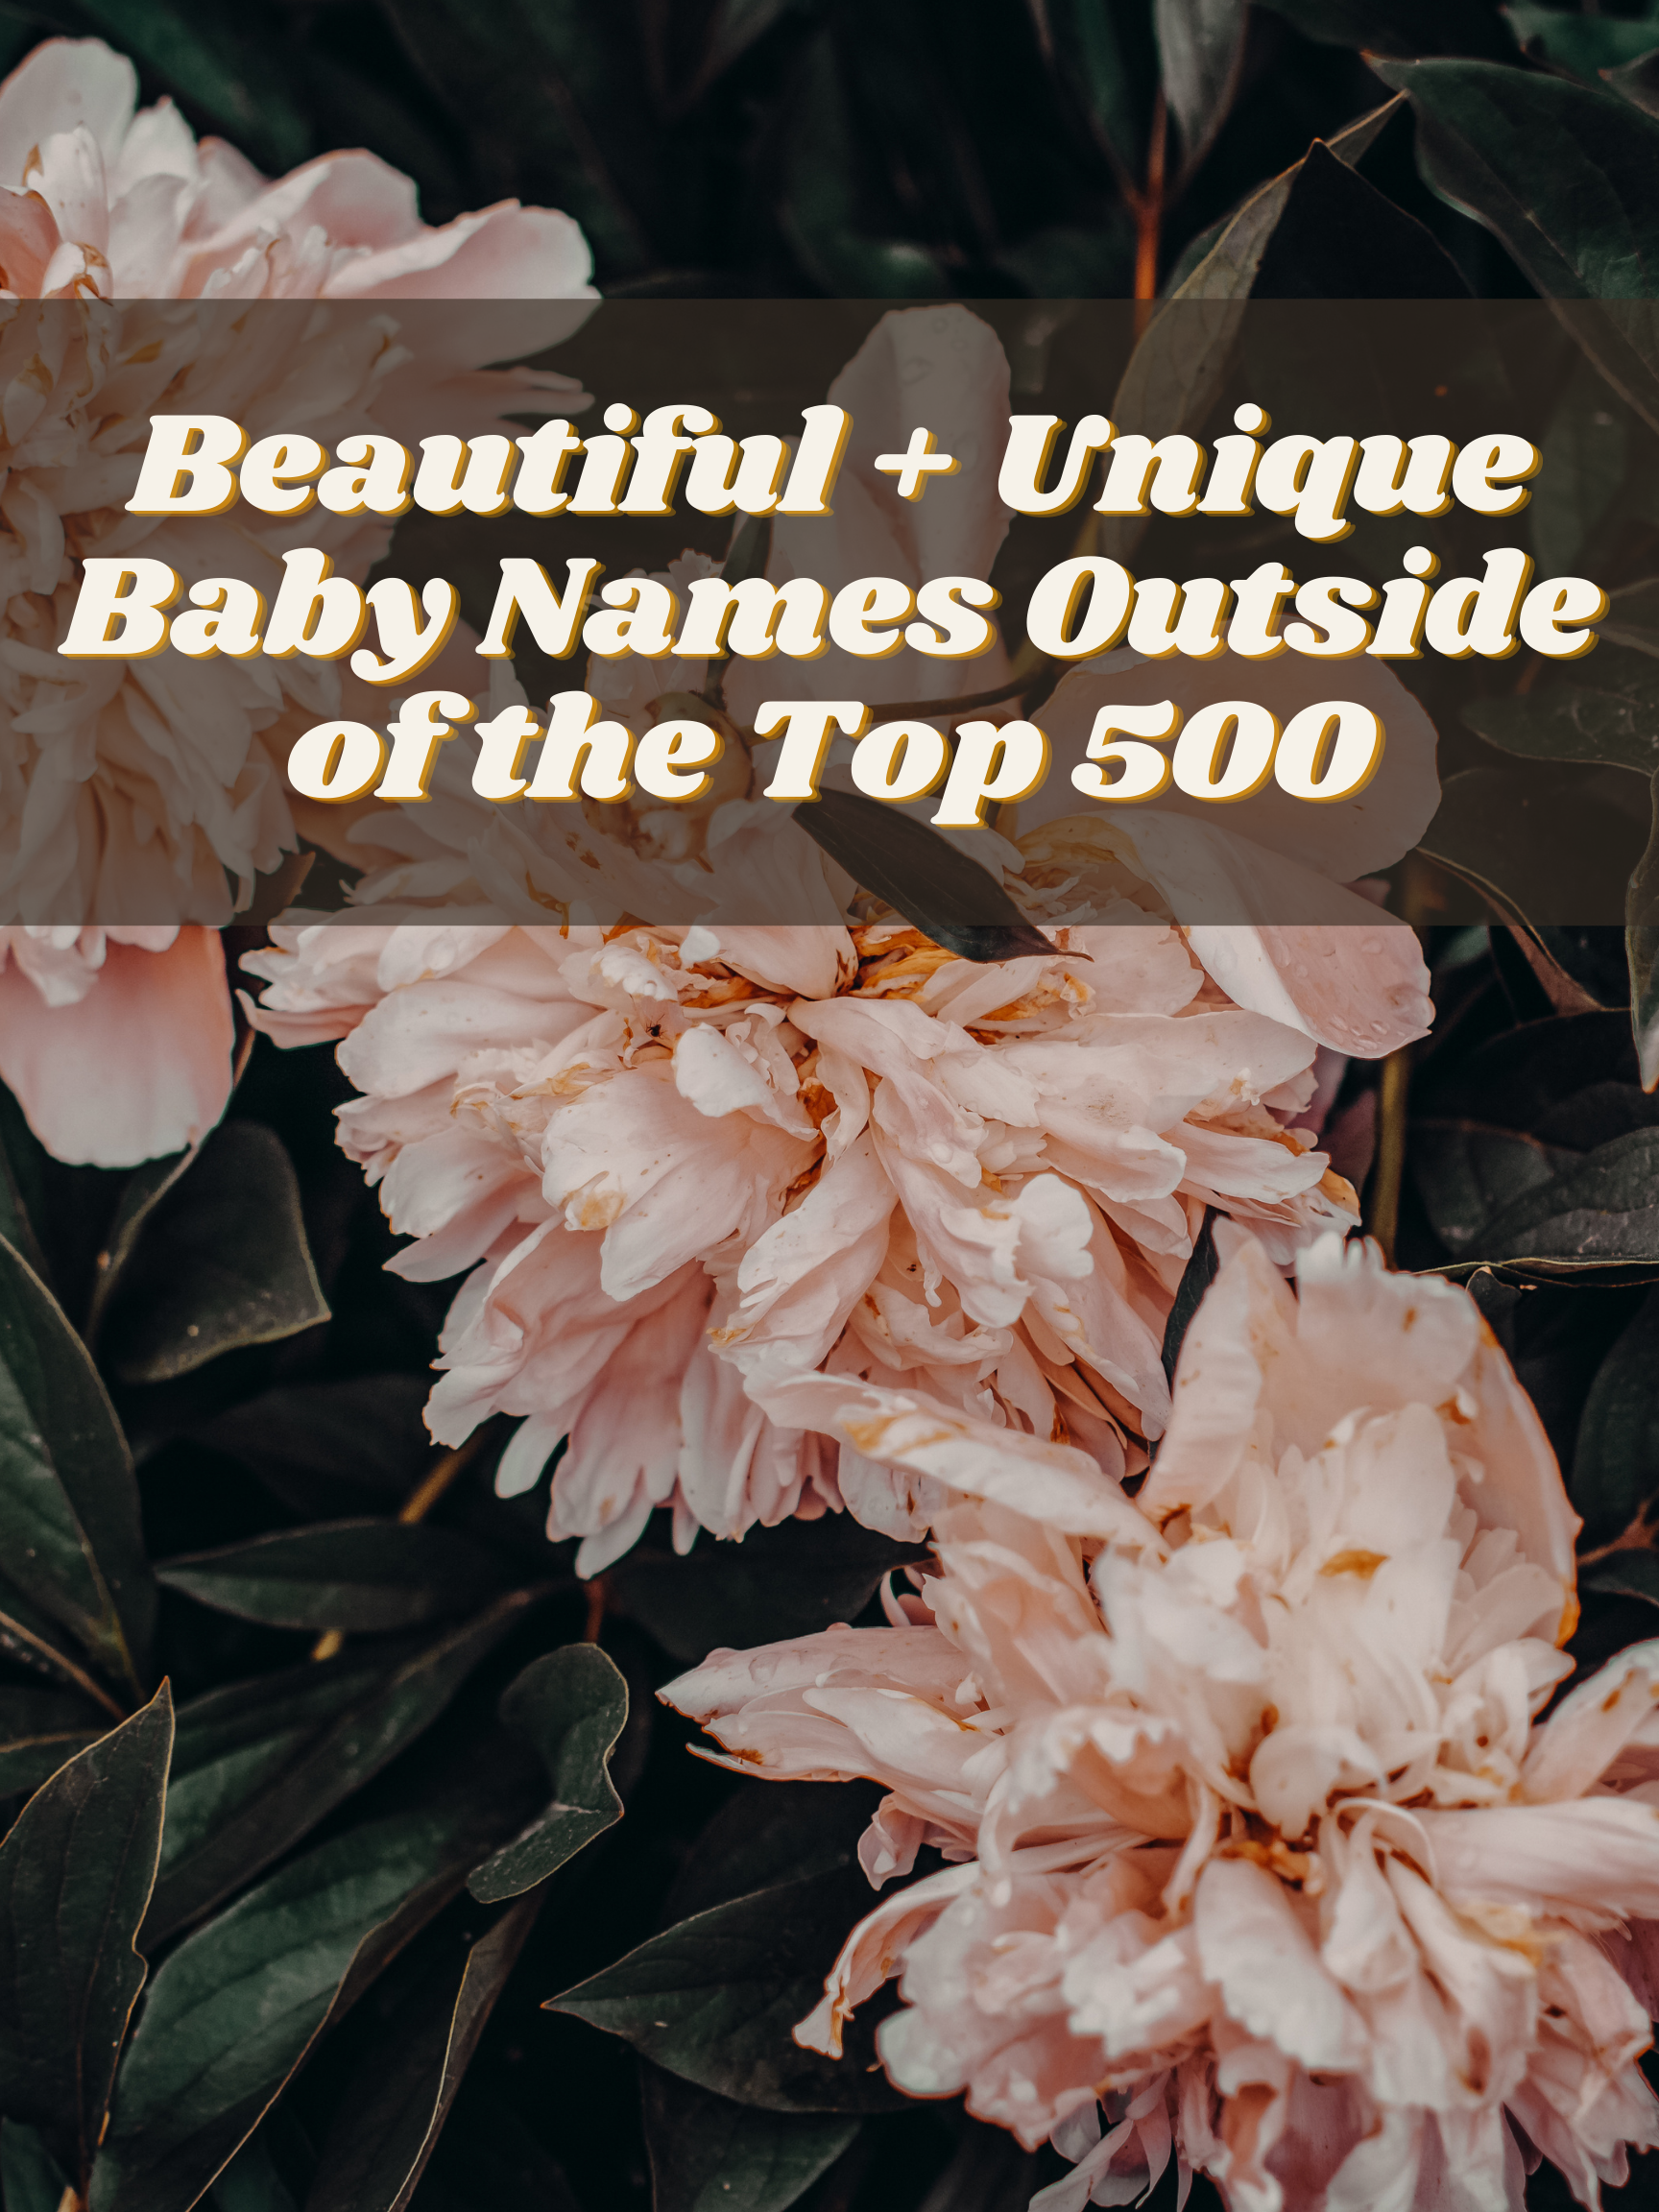 uncommon baby names